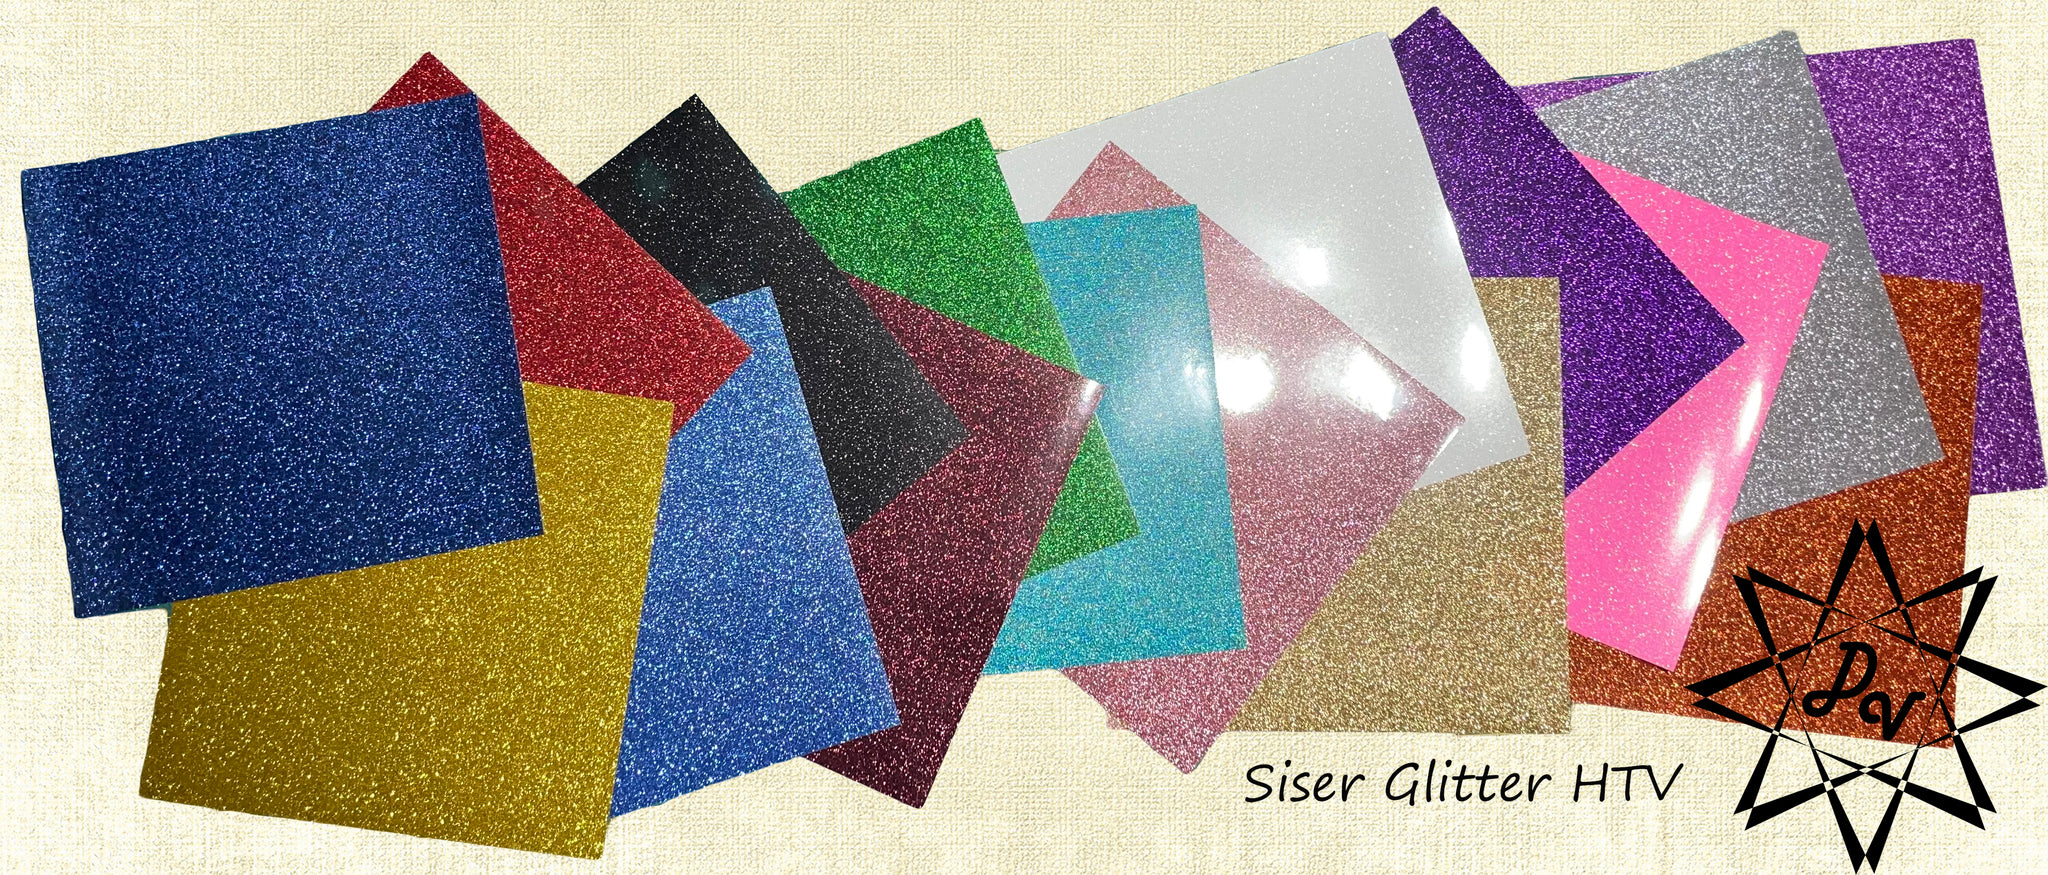 Siser® EasySubli® Heat Transfer Vinyl Sheets (8.4x11)